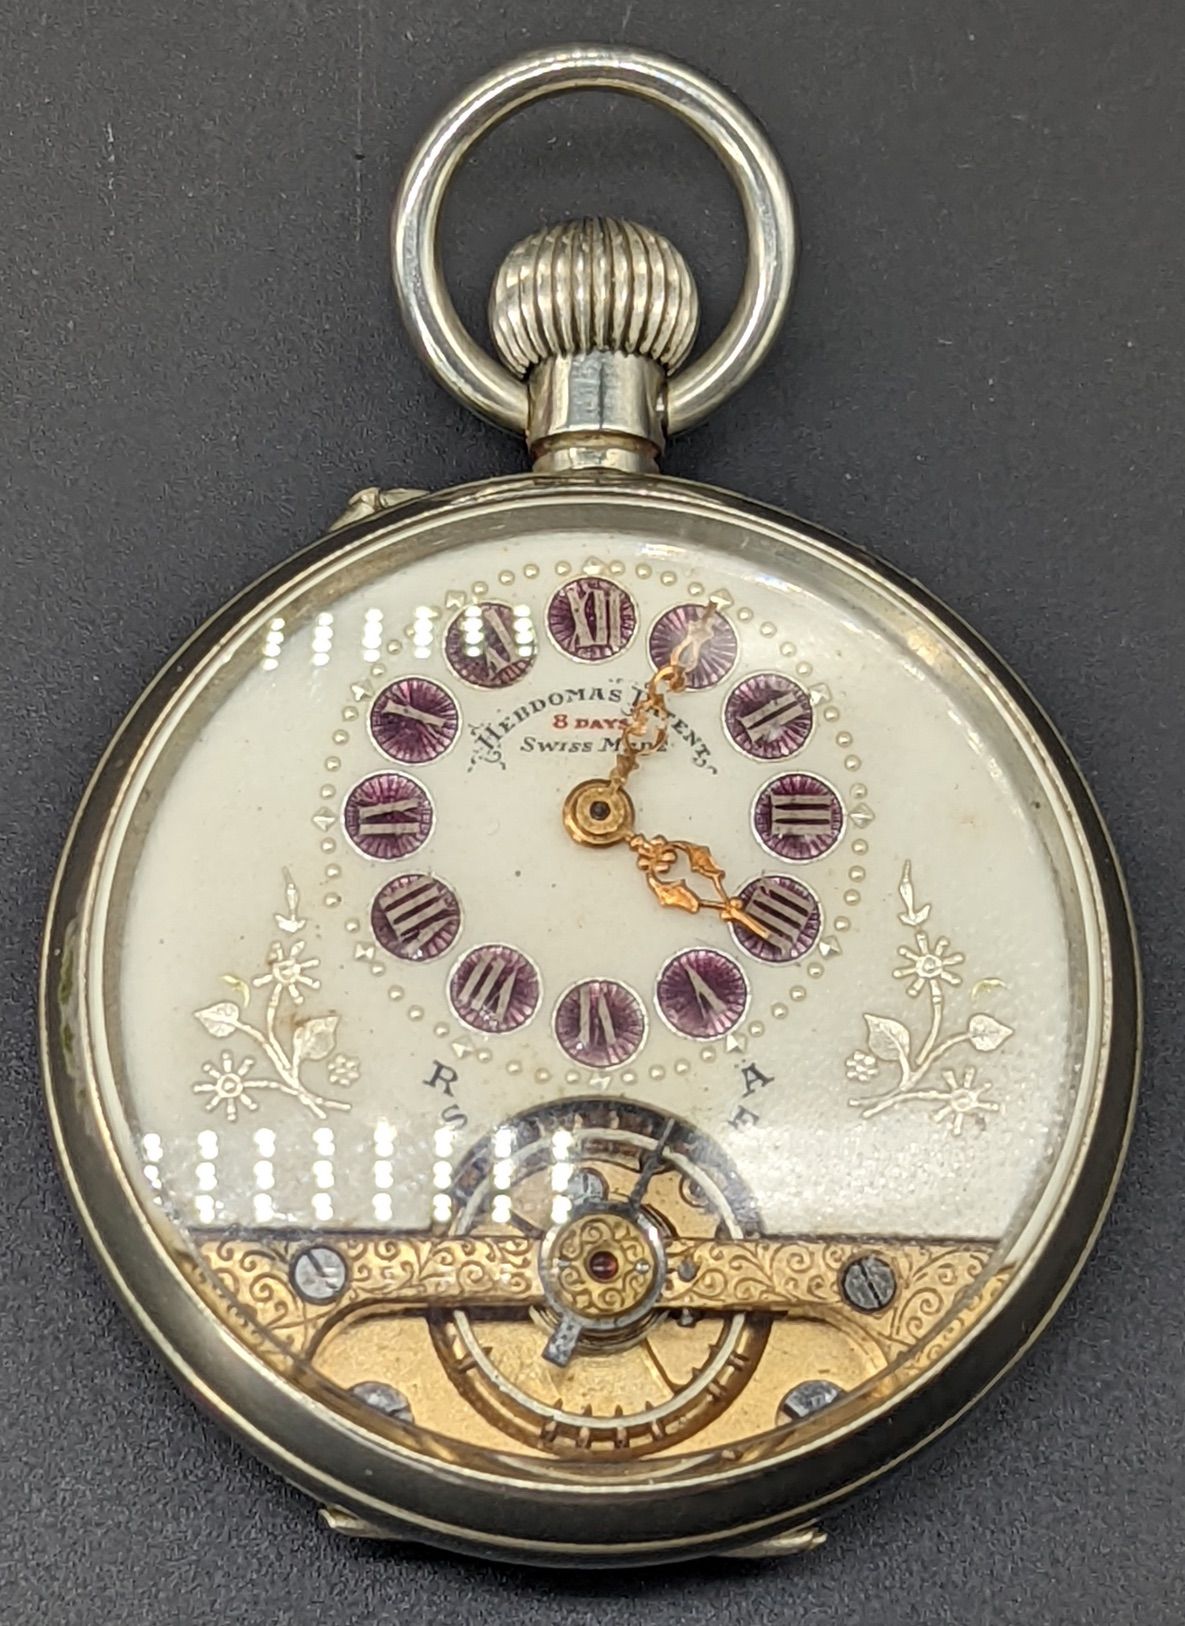 HEBDOMAS Reloj de bolsillo de plata con esfera telefónica de Hebdomas, 8 días, n&hellip;